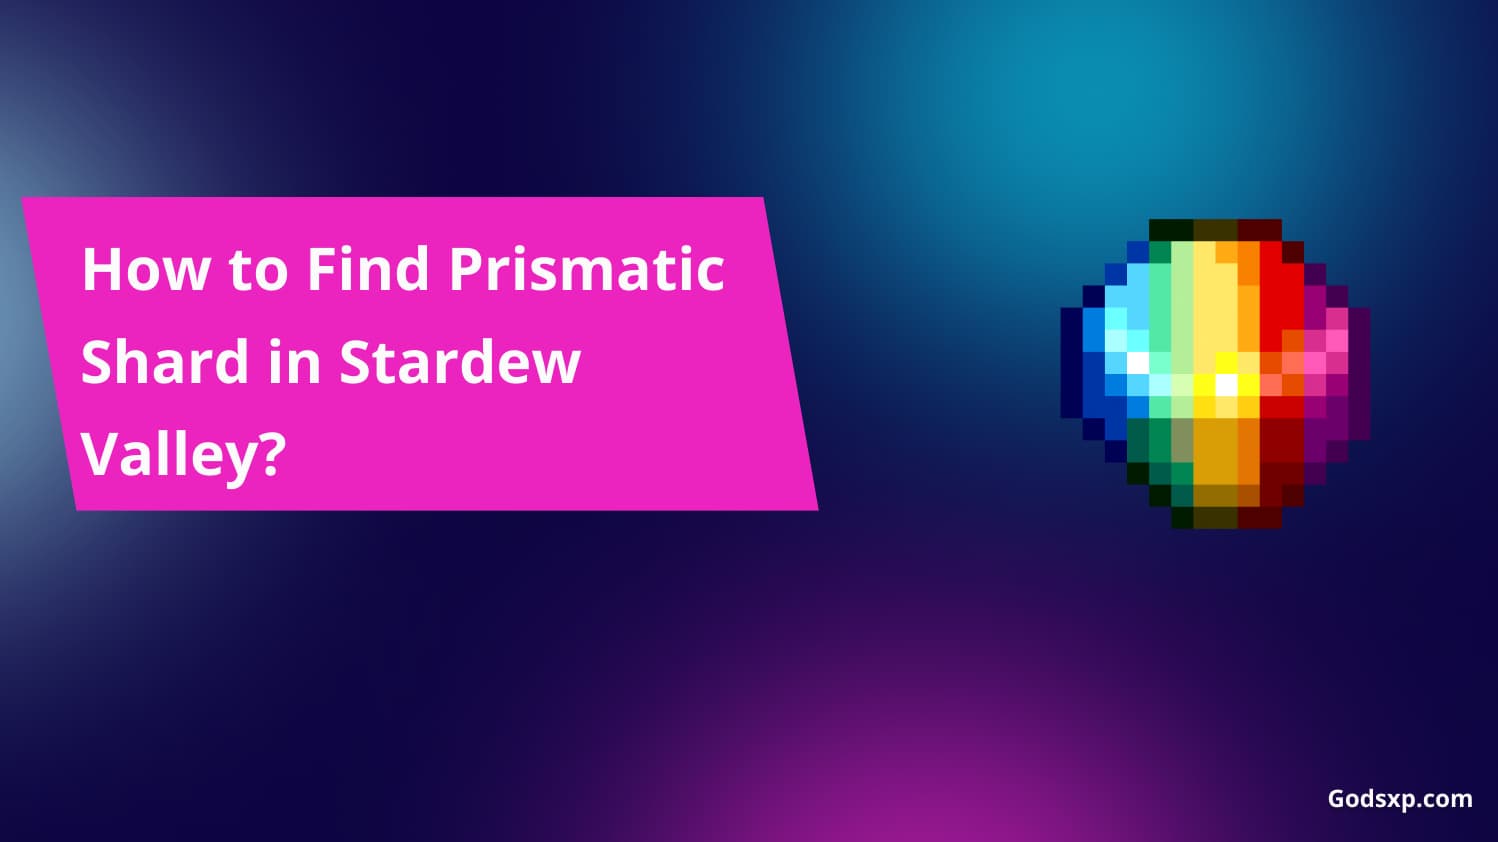 Prismatic Shard in Stardew Valley